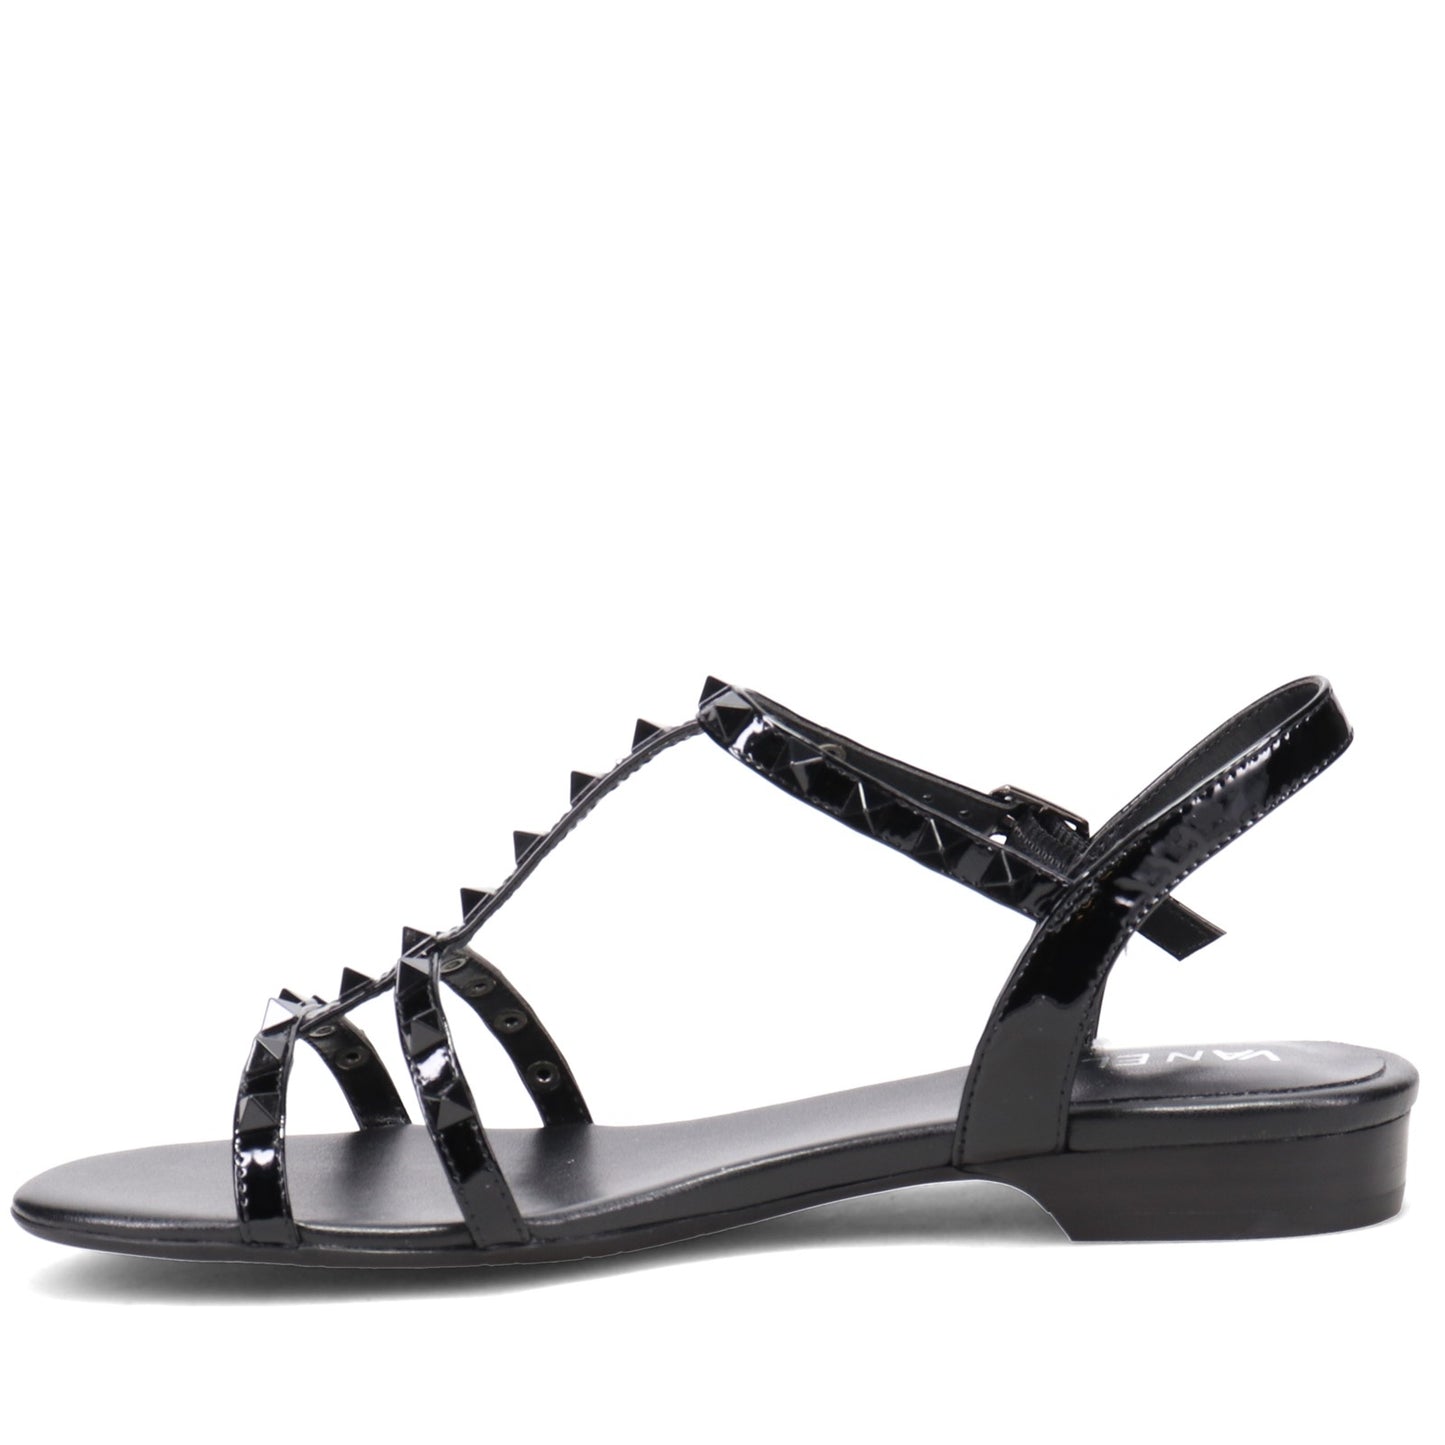 Peltz Shoes  Women's Vaneli Brunel Sandal BLACK BRUNEL-BLACK